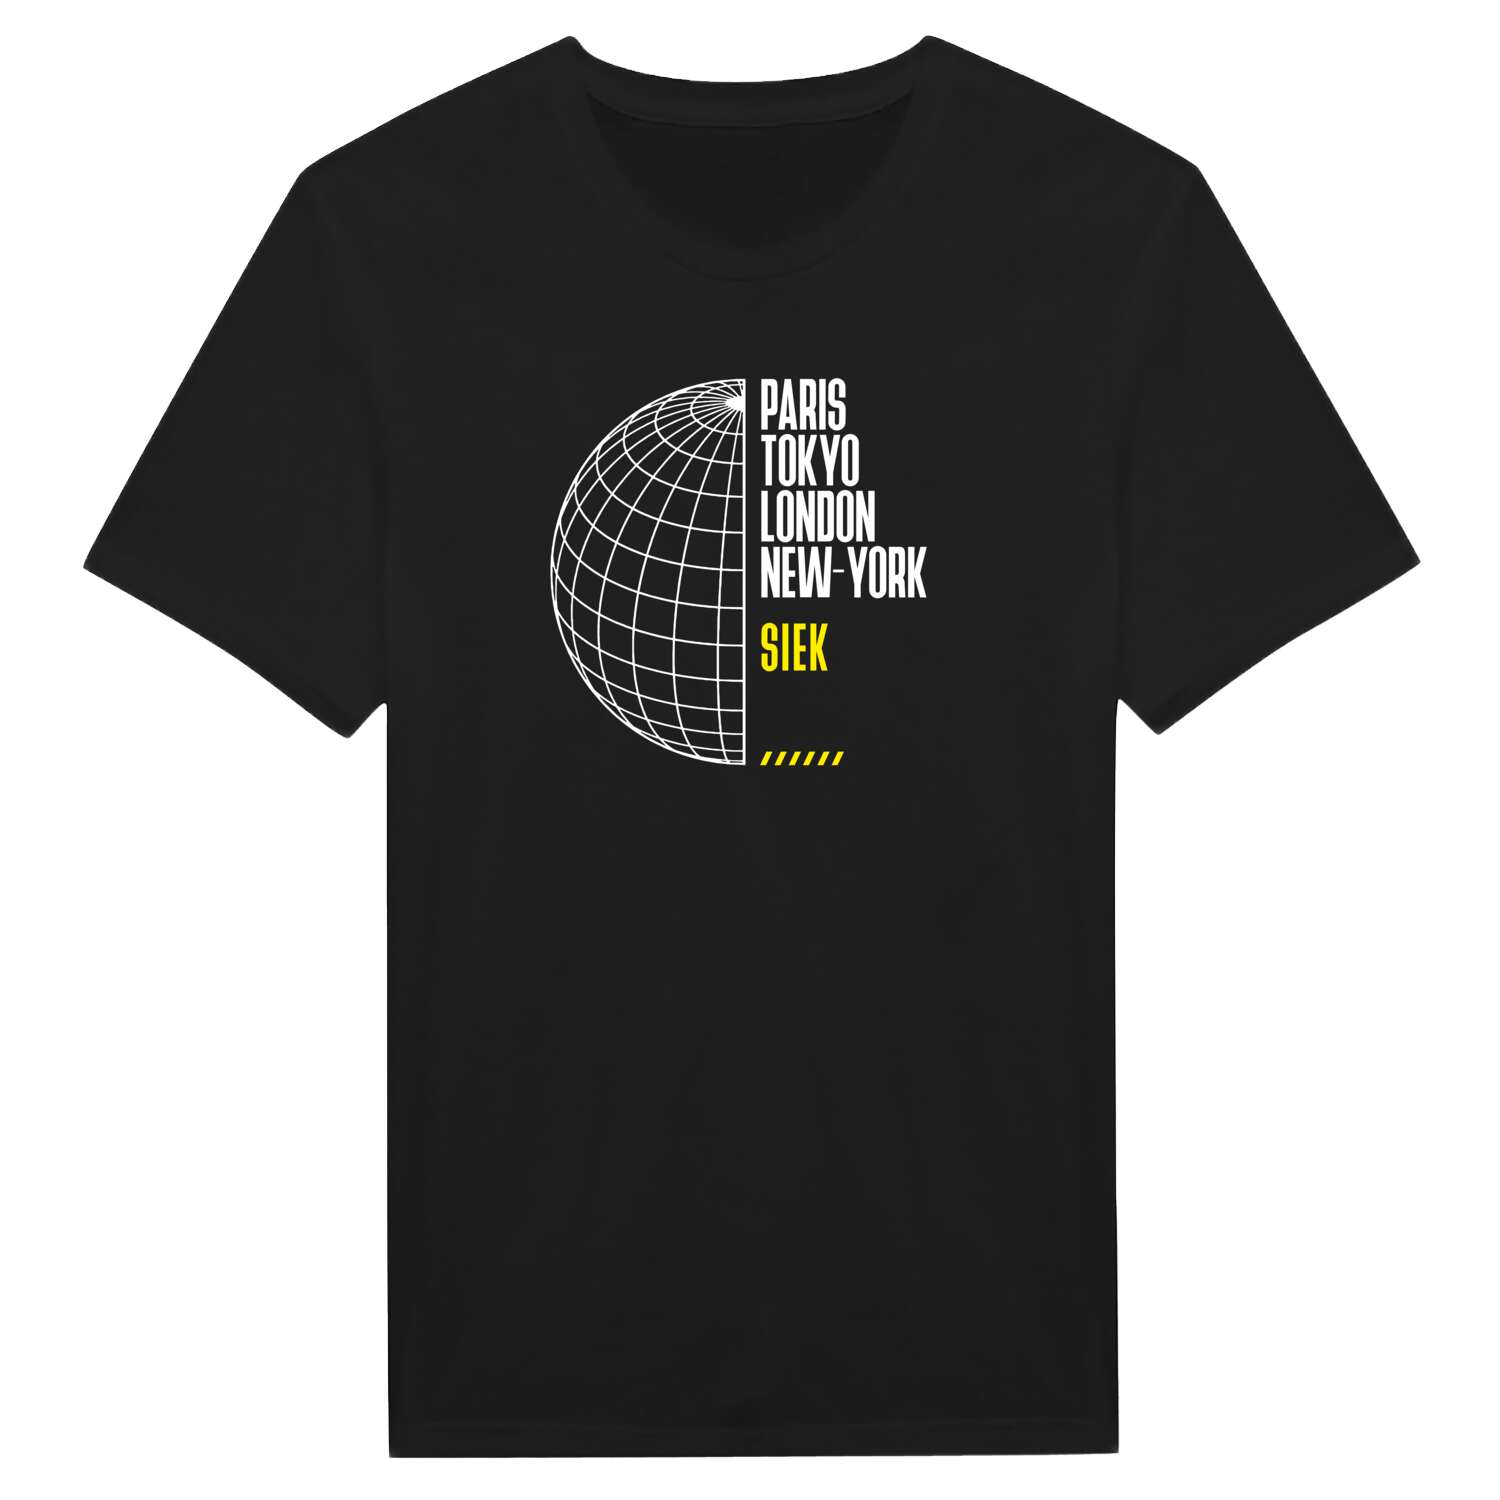 Siek T-Shirt »Paris Tokyo London«